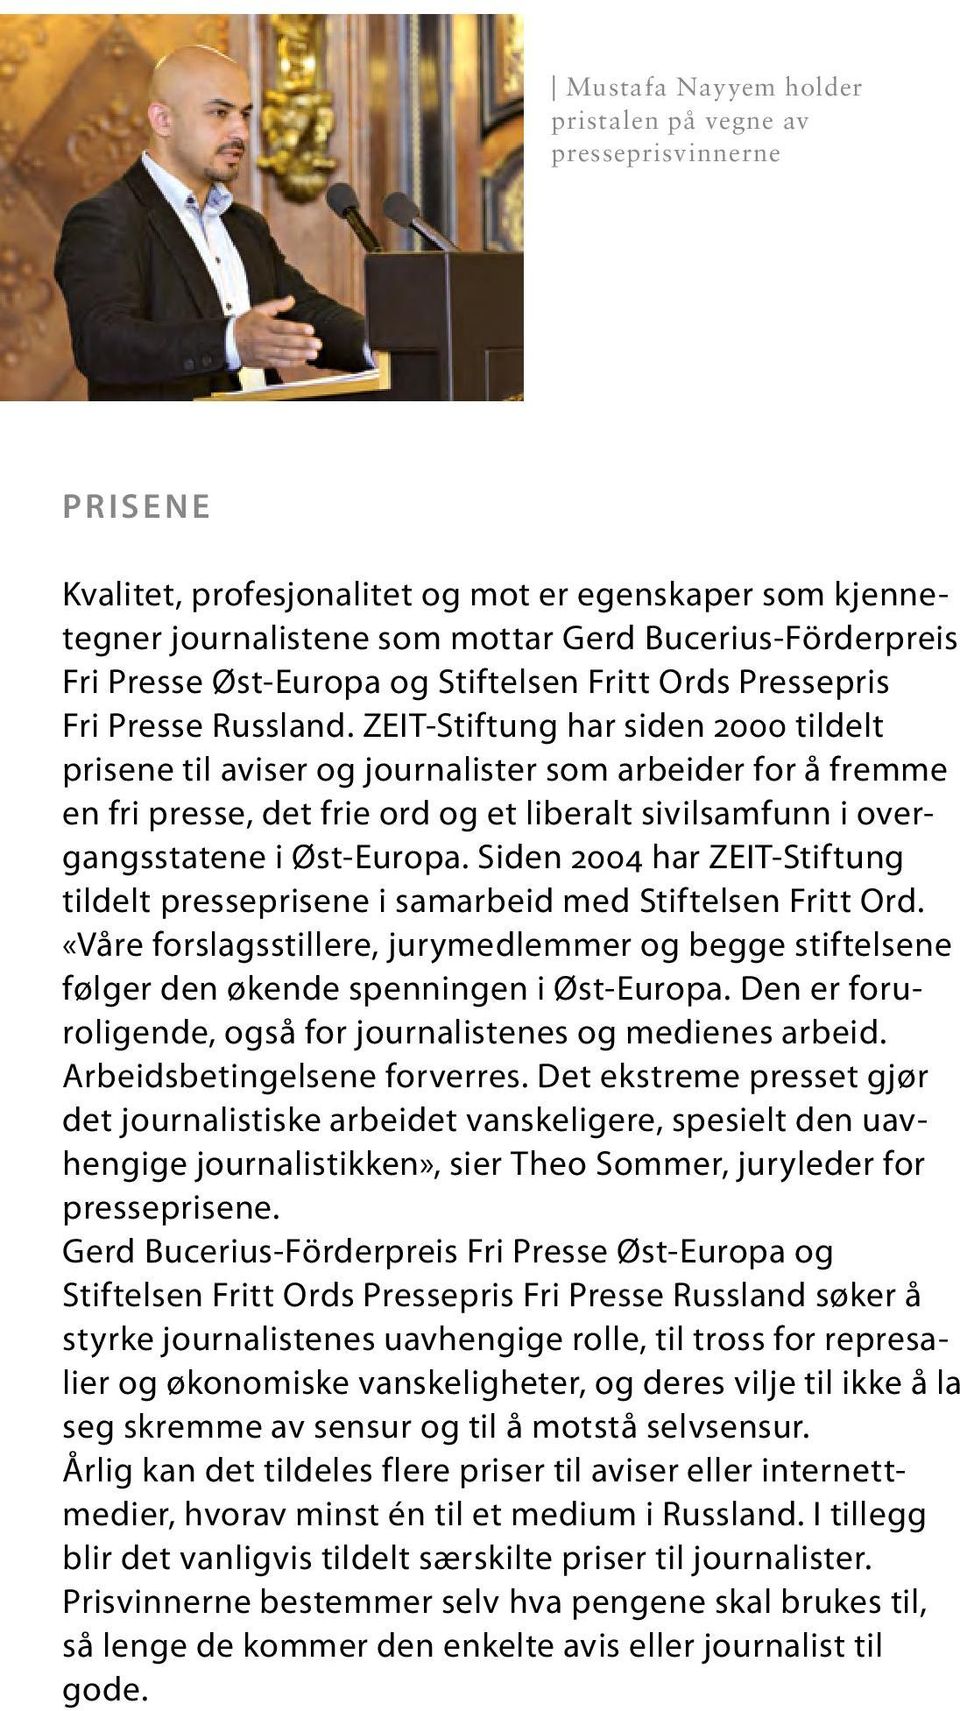 ZEIT-Stiftung har siden 2000 tildelt prisene til aviser og journalister som arbeider for å fremme en fri presse, det frie ord og et liberalt sivilsamfunn i overgangsstatene i Øst-Europa.